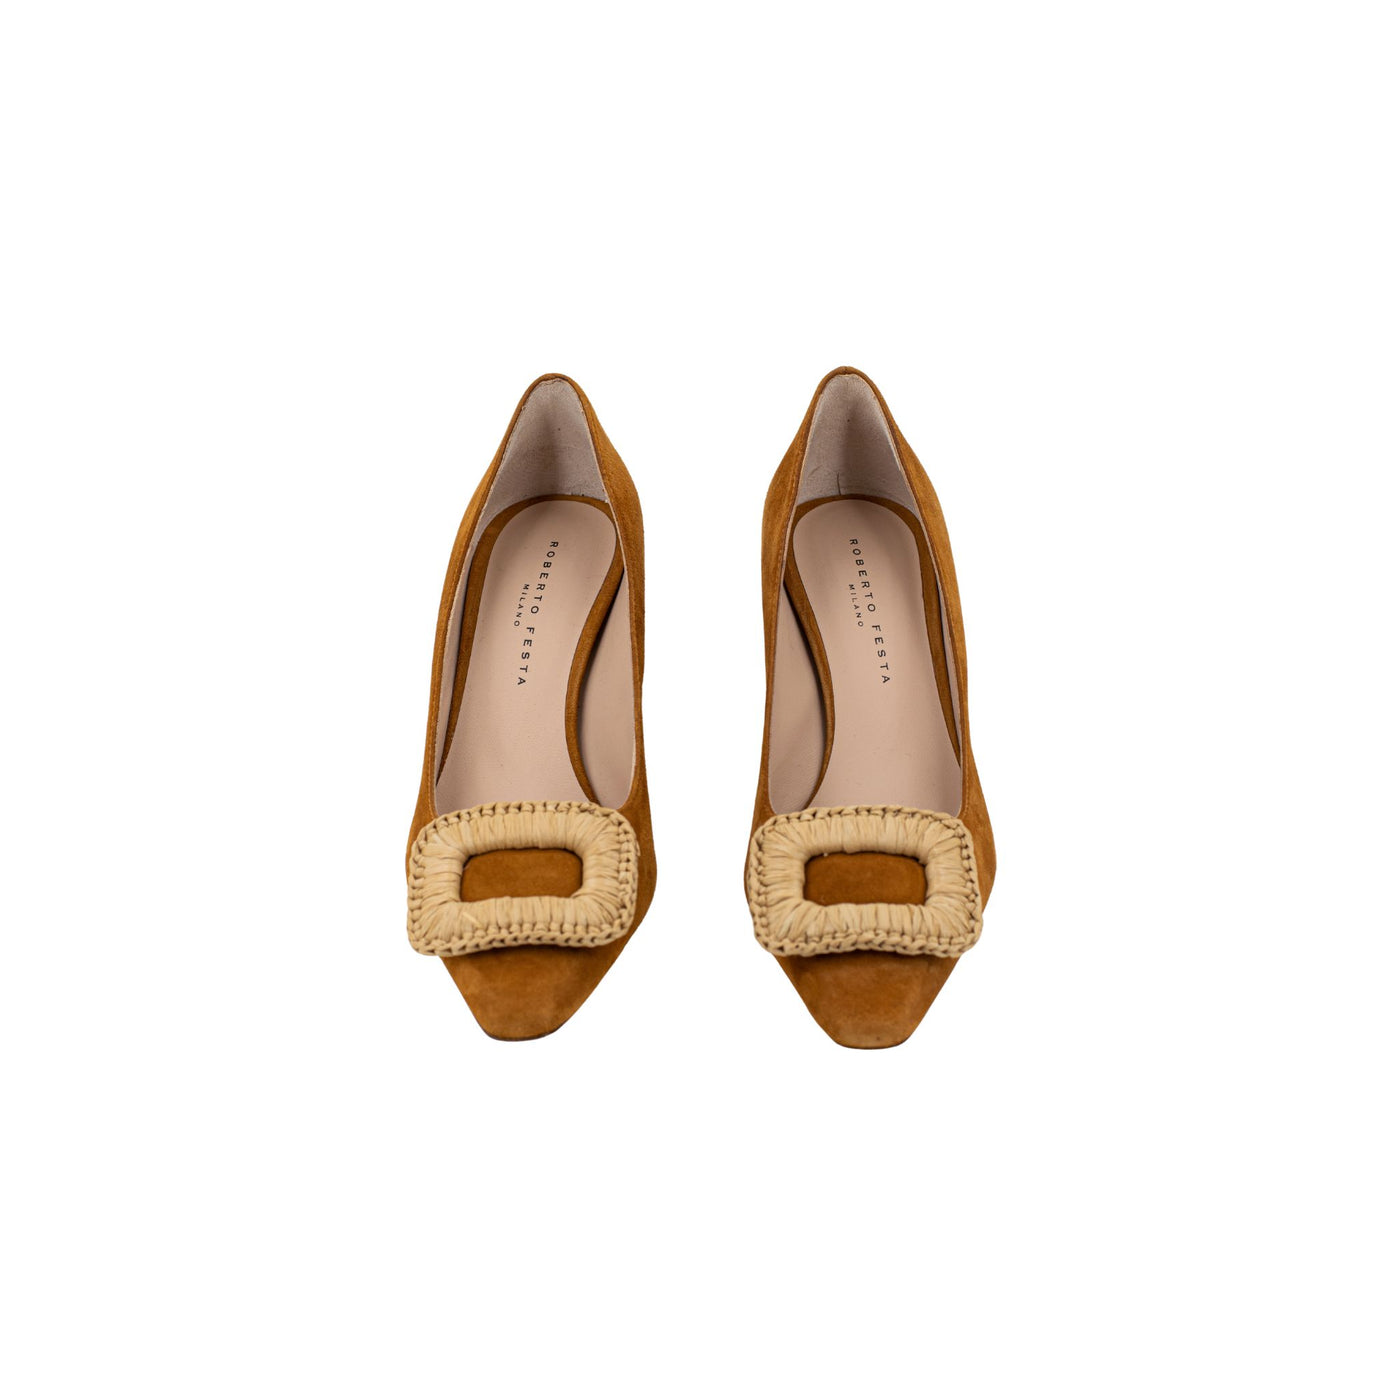 Women's suede shoe with heel